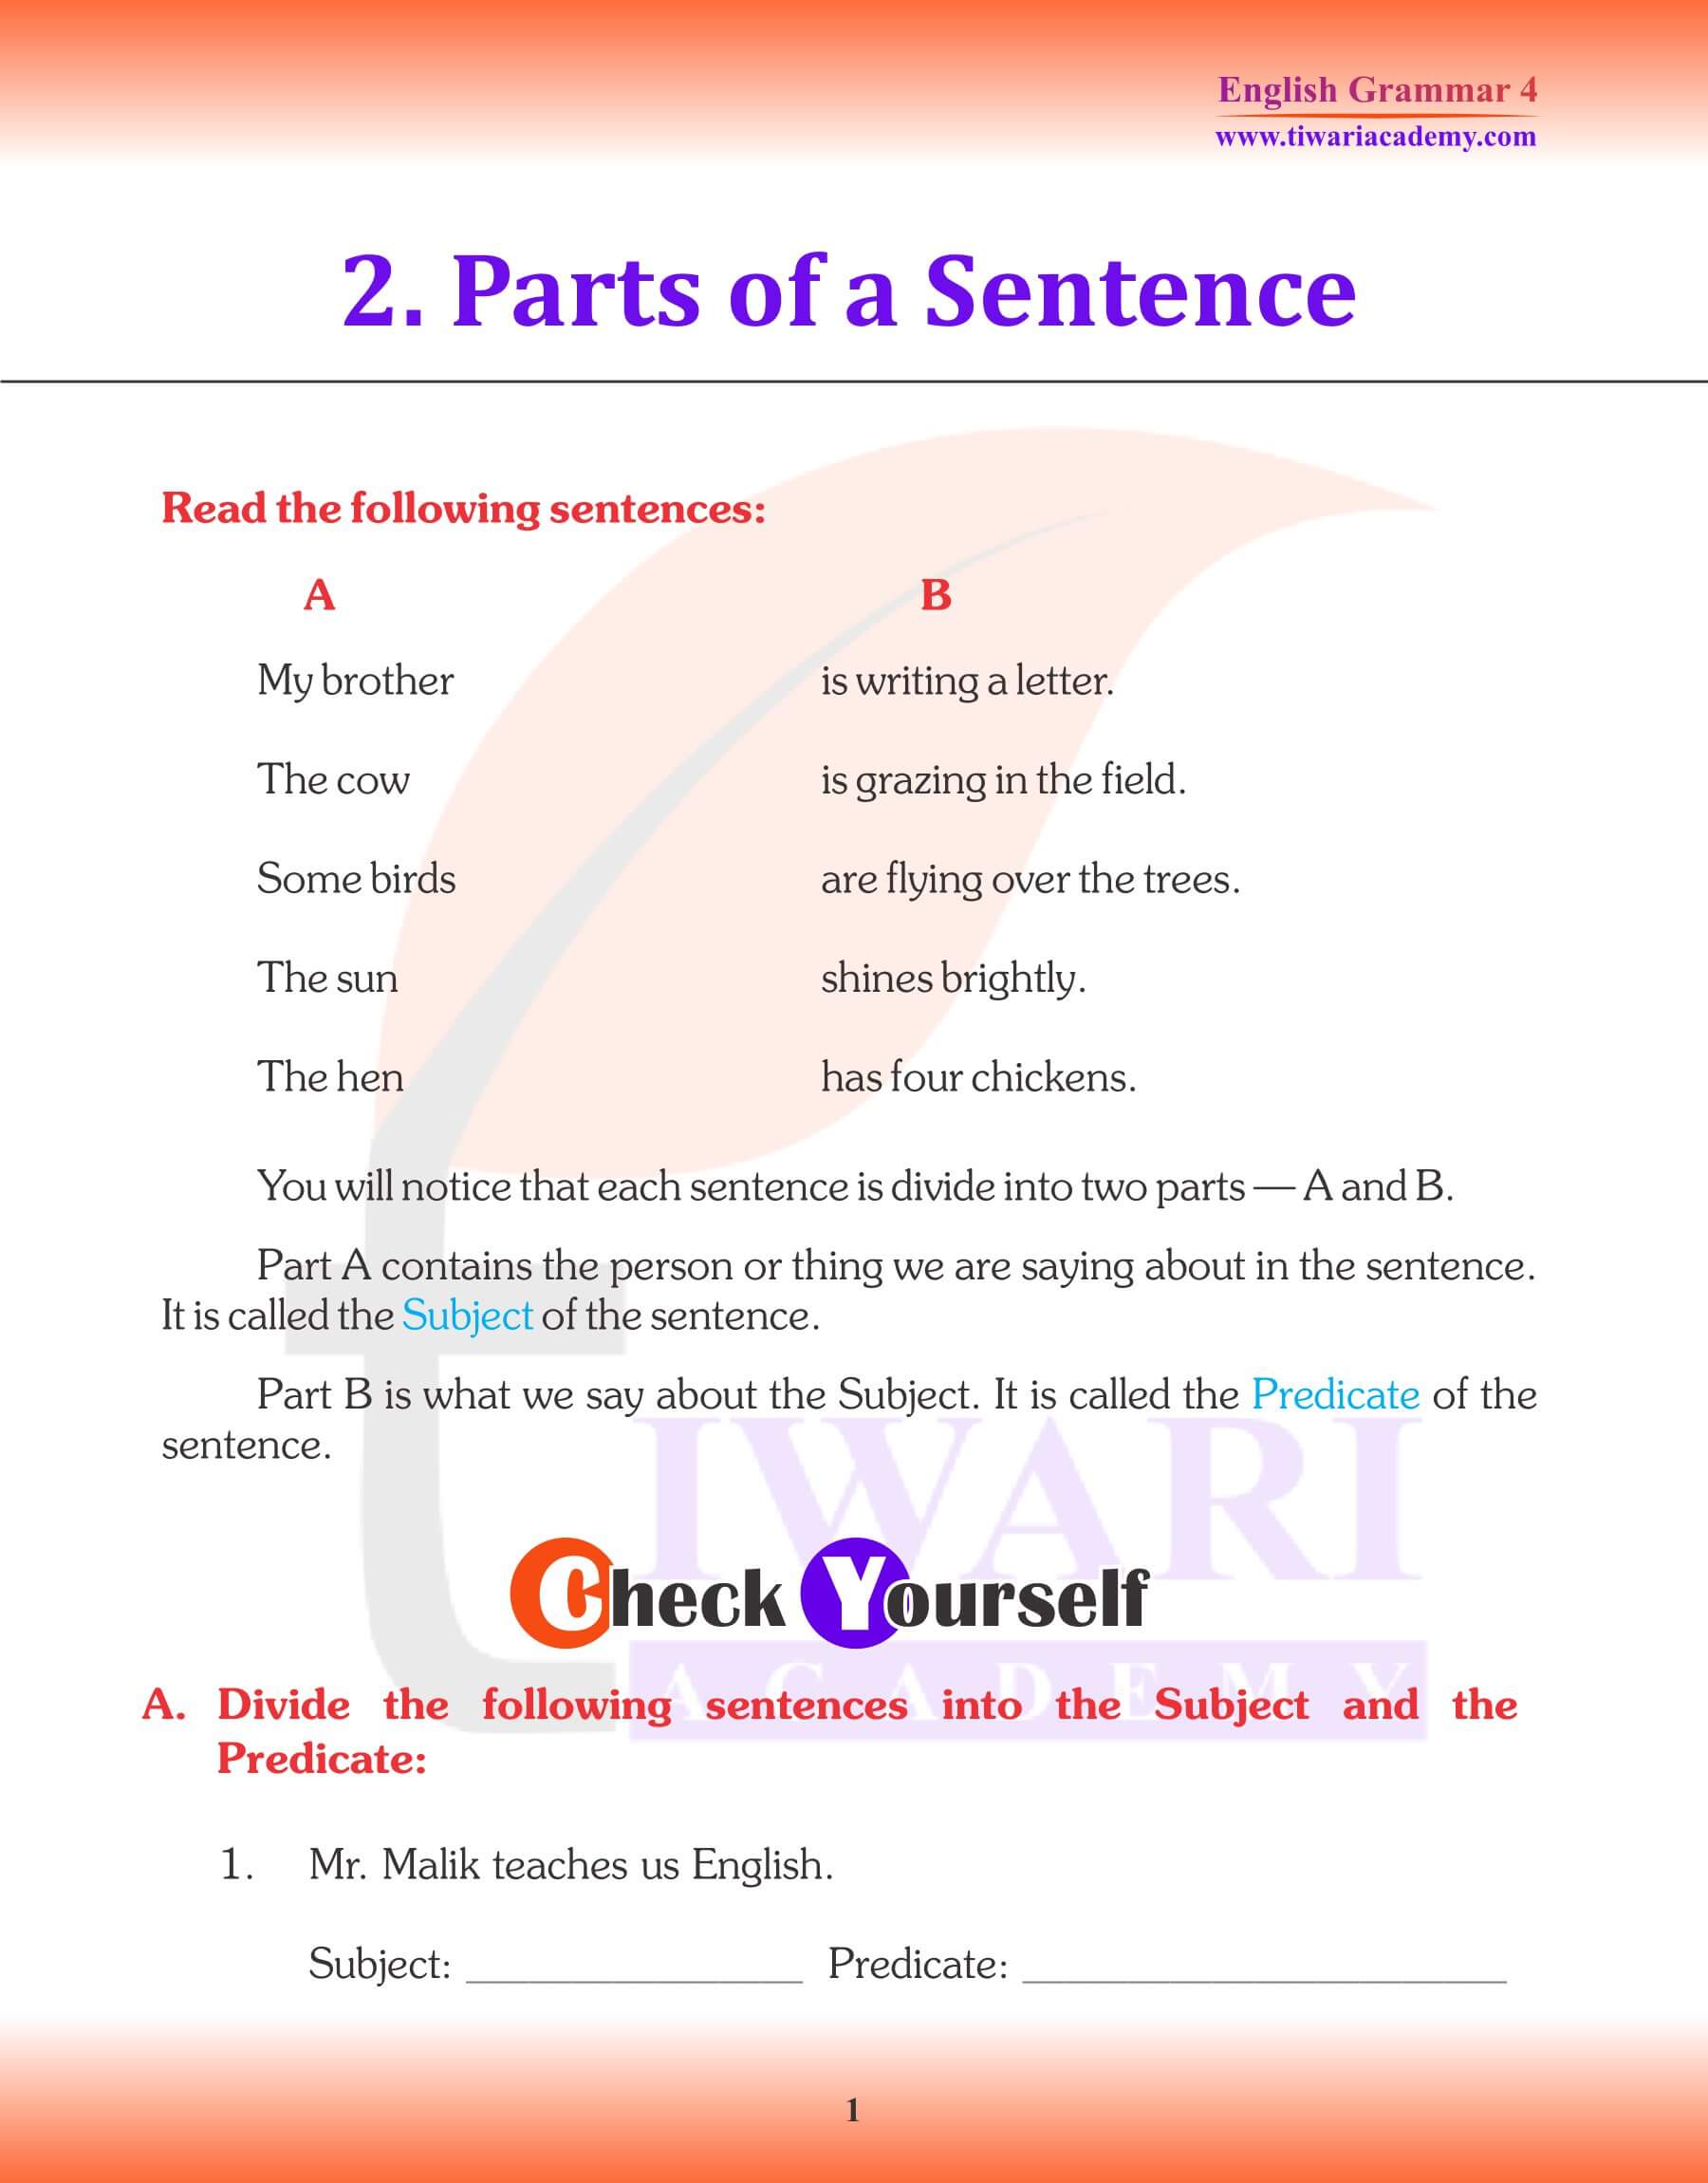 Class 4 English Grammar Parts of a Sentence